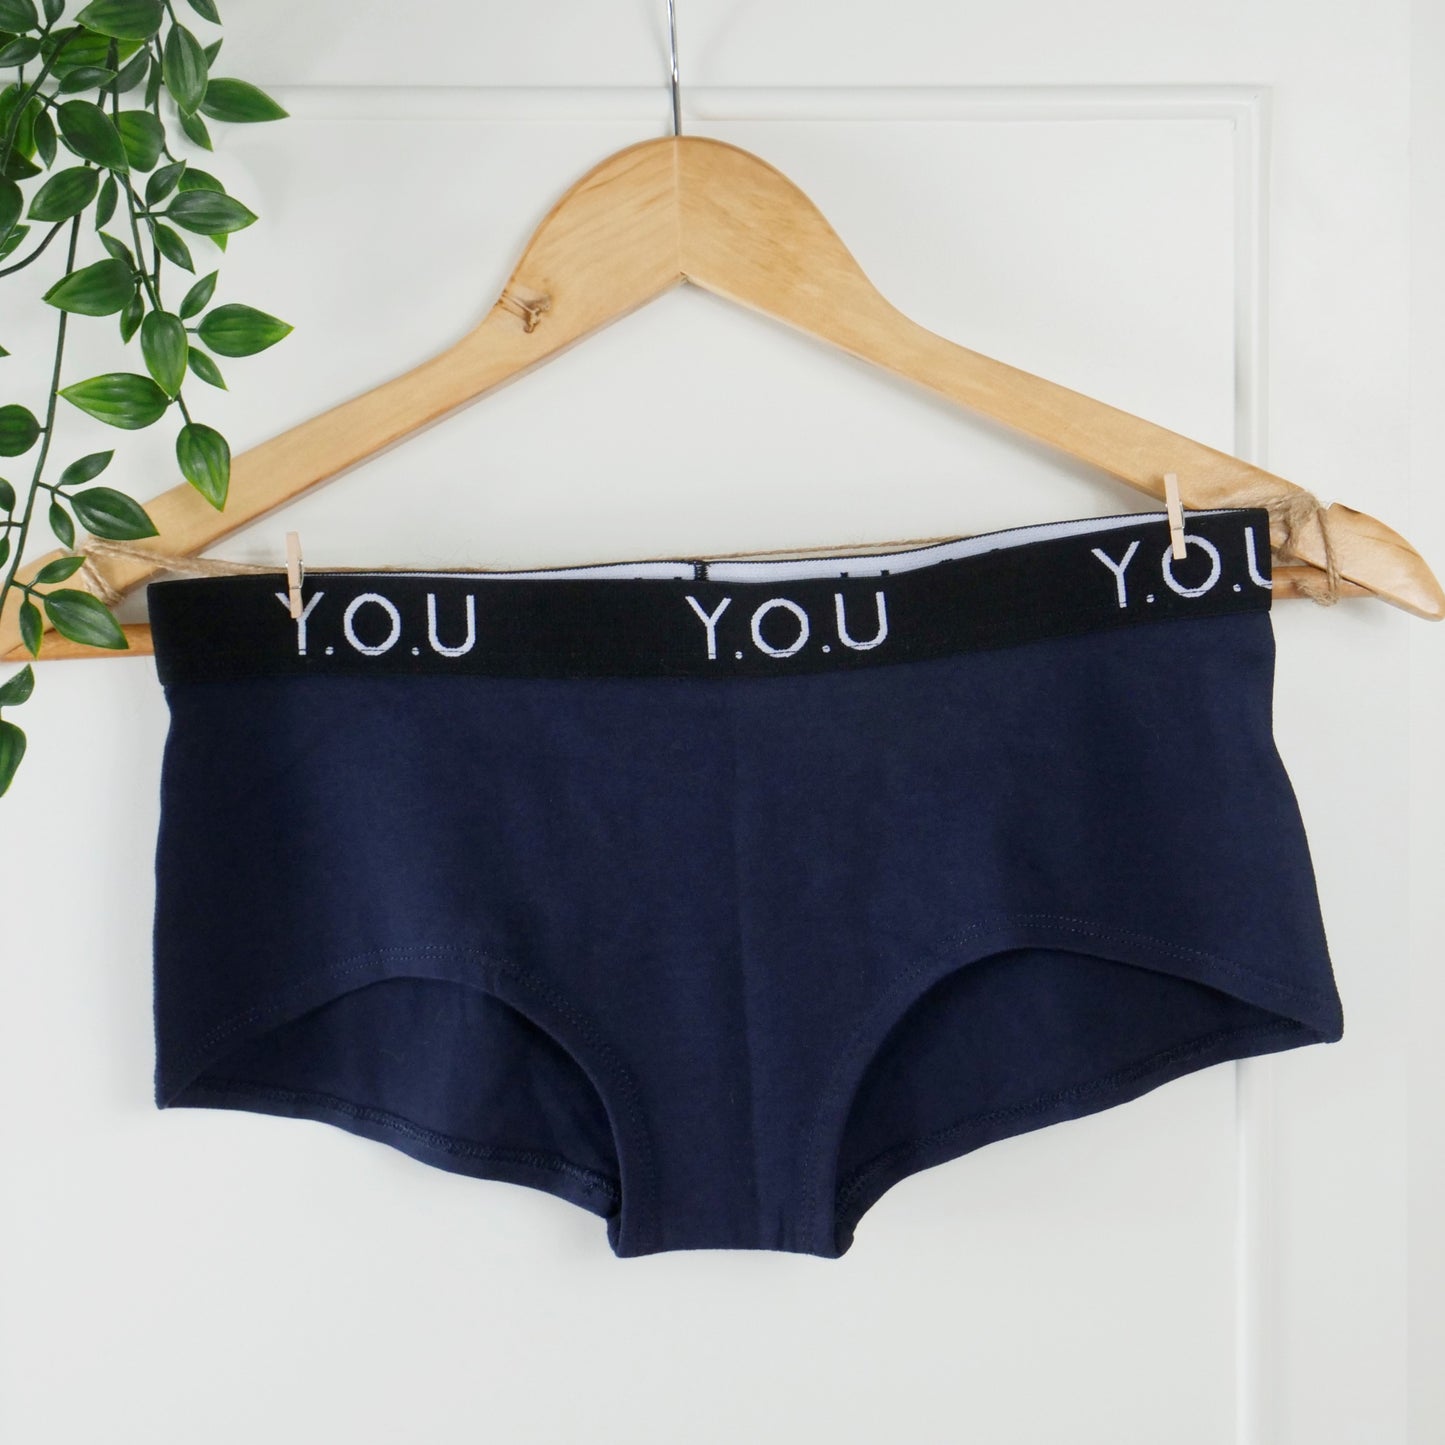 Women’s organic cotton boy shorts with Y.O.U elastic in navy blue